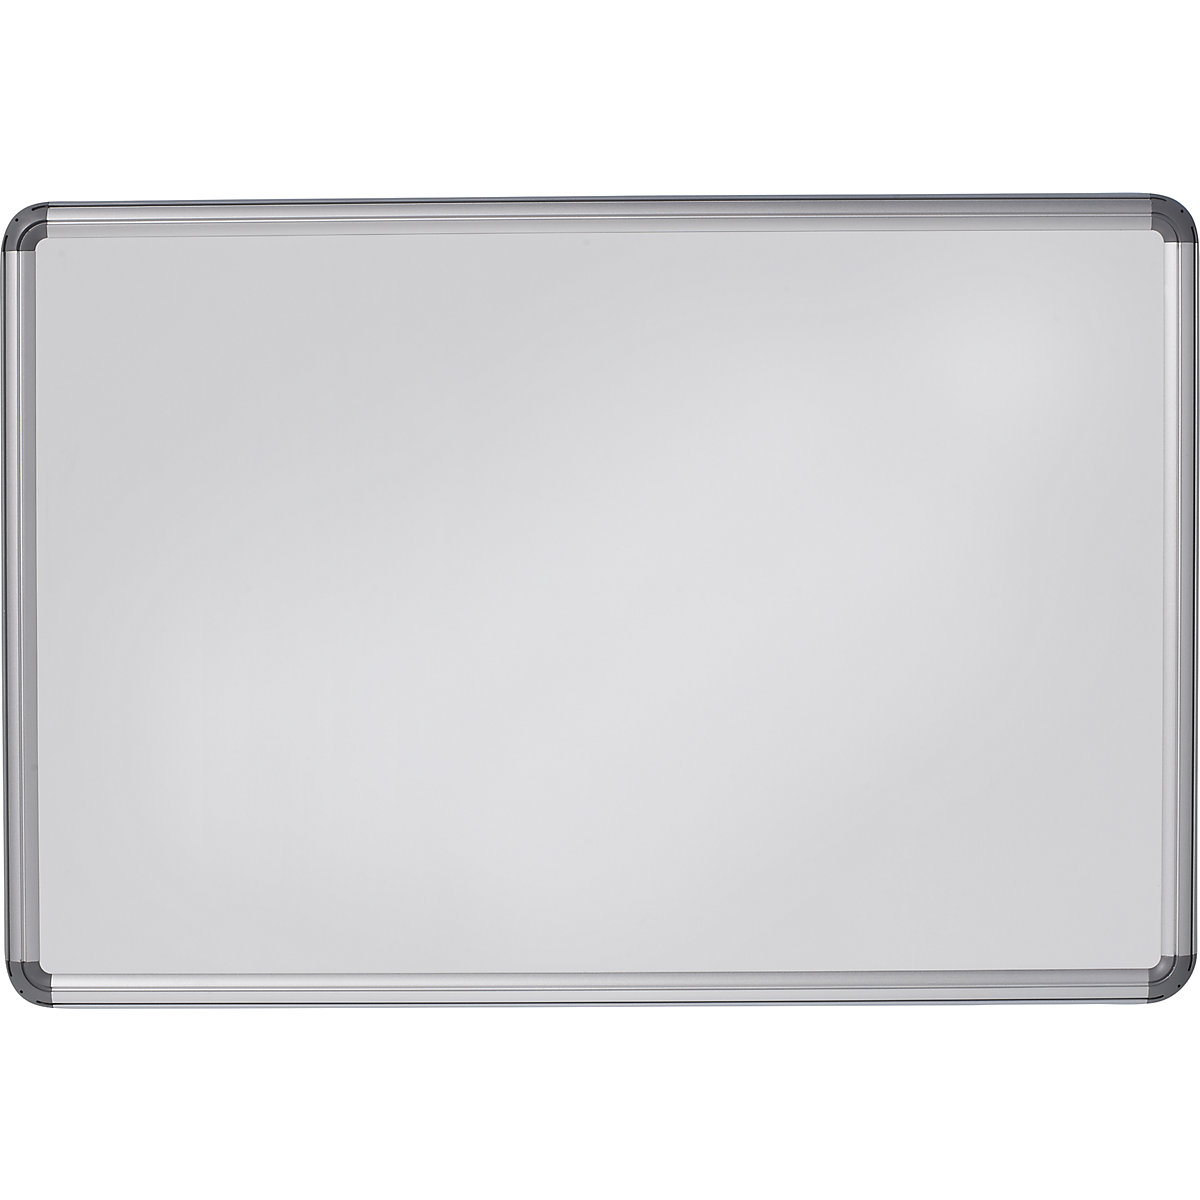 Elegantní nástěnná tabule – eurokraft pro, ocelový plech, lakováno, š x v 1200 x 900 mm, bílá